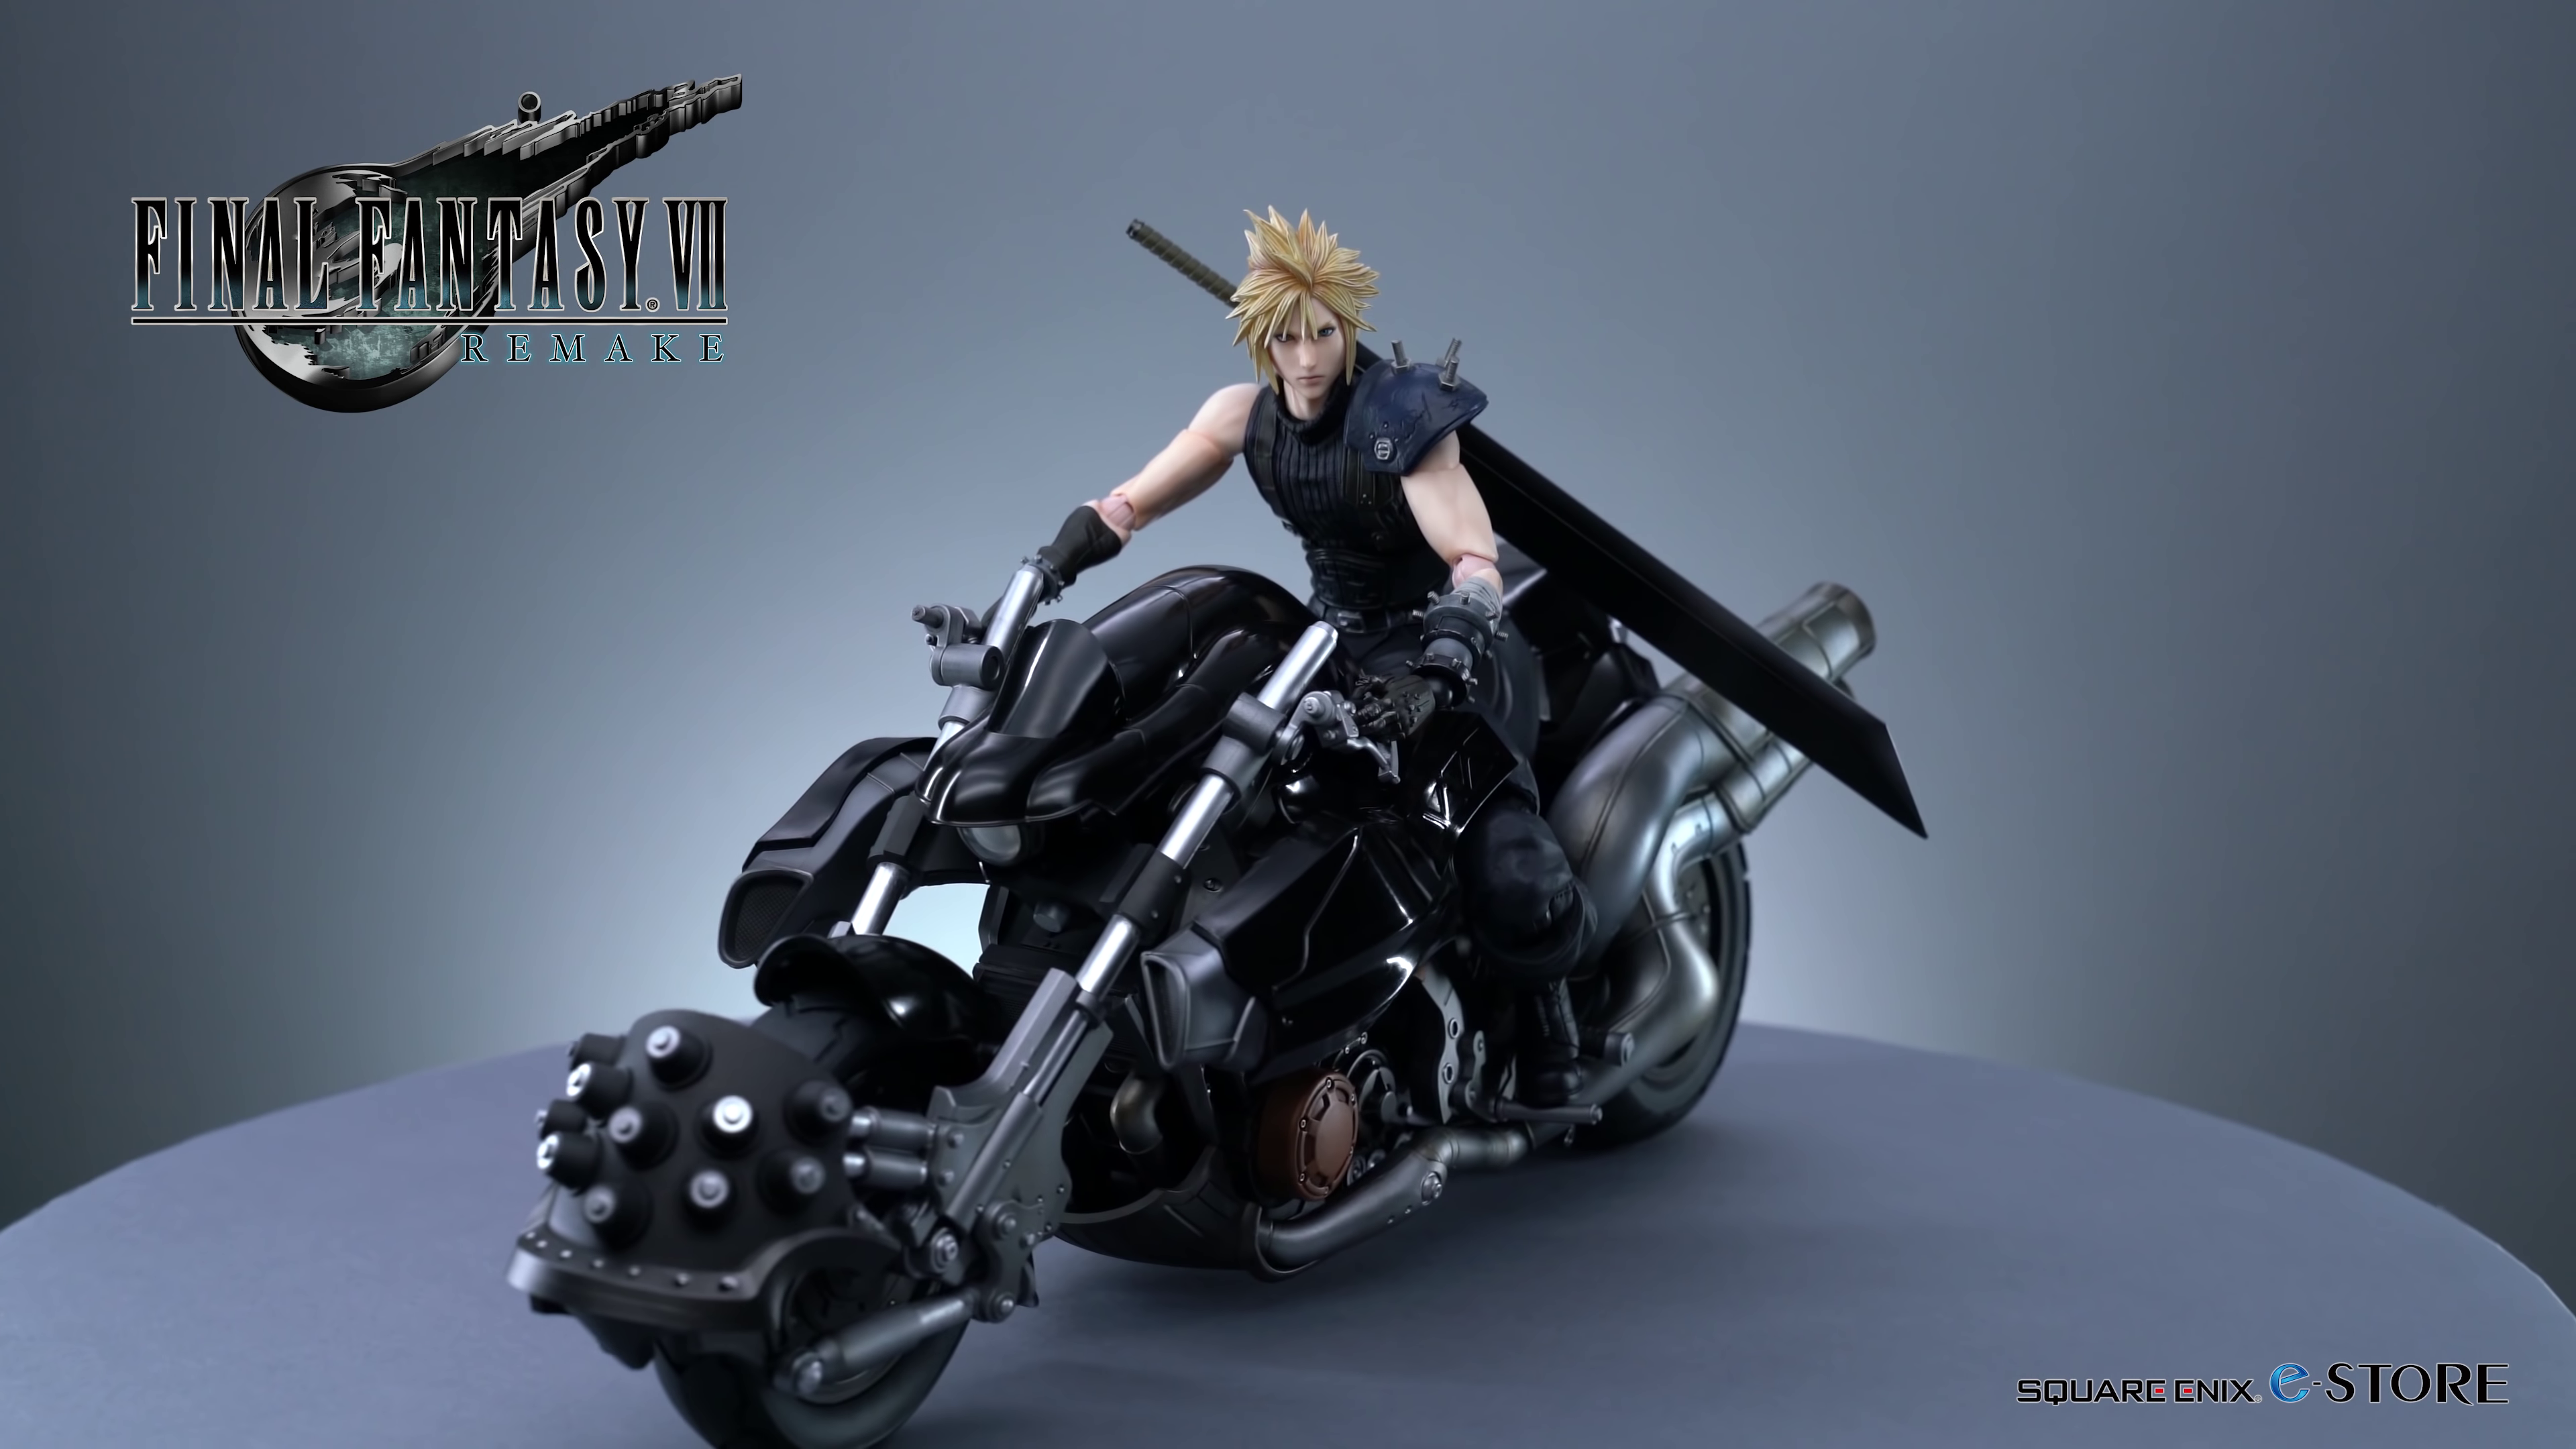 Cloud en moto de Final Fantasy VII Remake